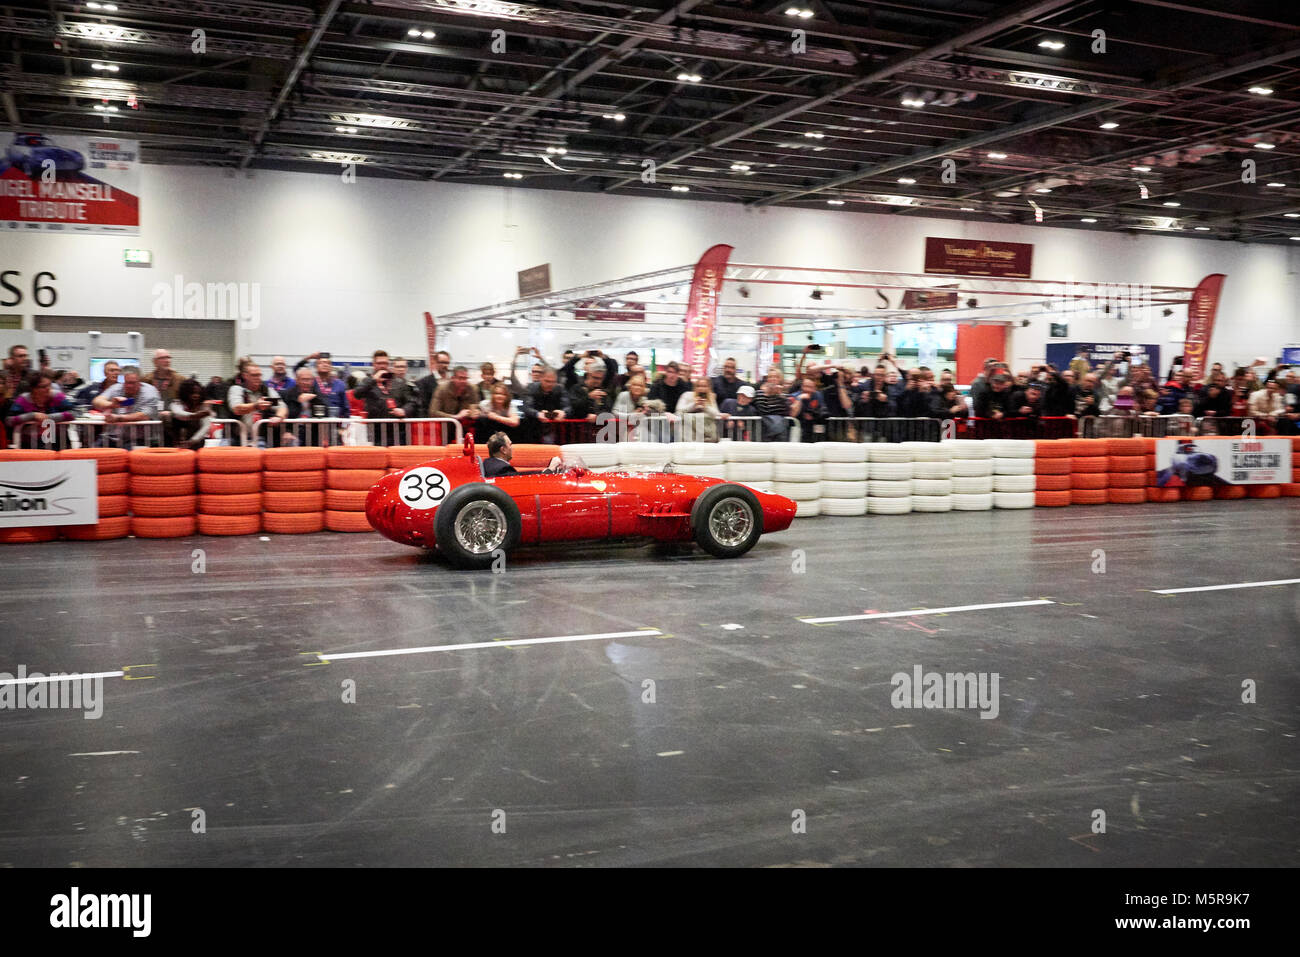 Nigel Mansell au volant d'une Ferrari Dino 246 1960 F1 . Montrant au centre Excel de Londres l'Classic Car Show 2018. Londres, Angleterre, Grande-Bretagne, Royaume-Uni Banque D'Images